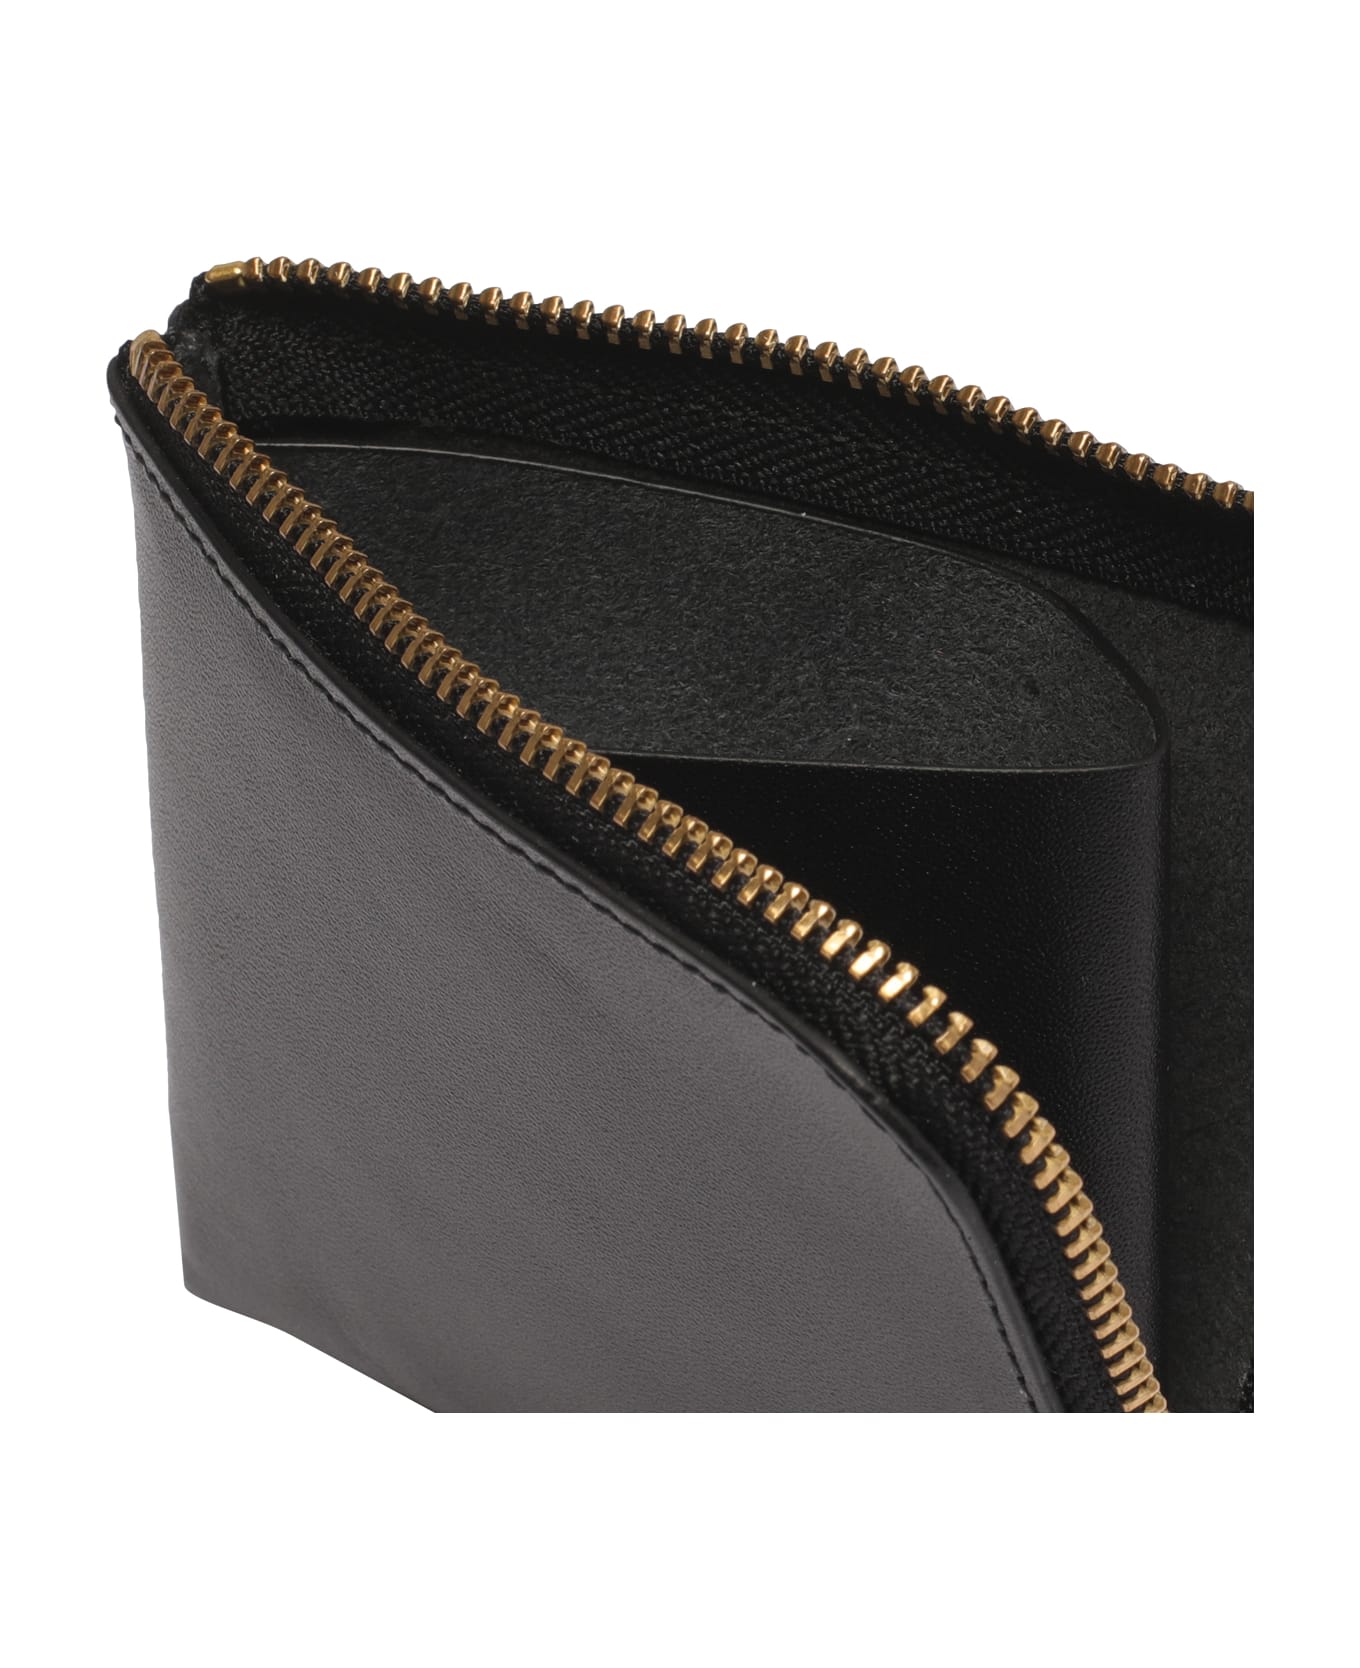 Comme des Garçons Wallet Classic Leather Line Wallet - Black 財布